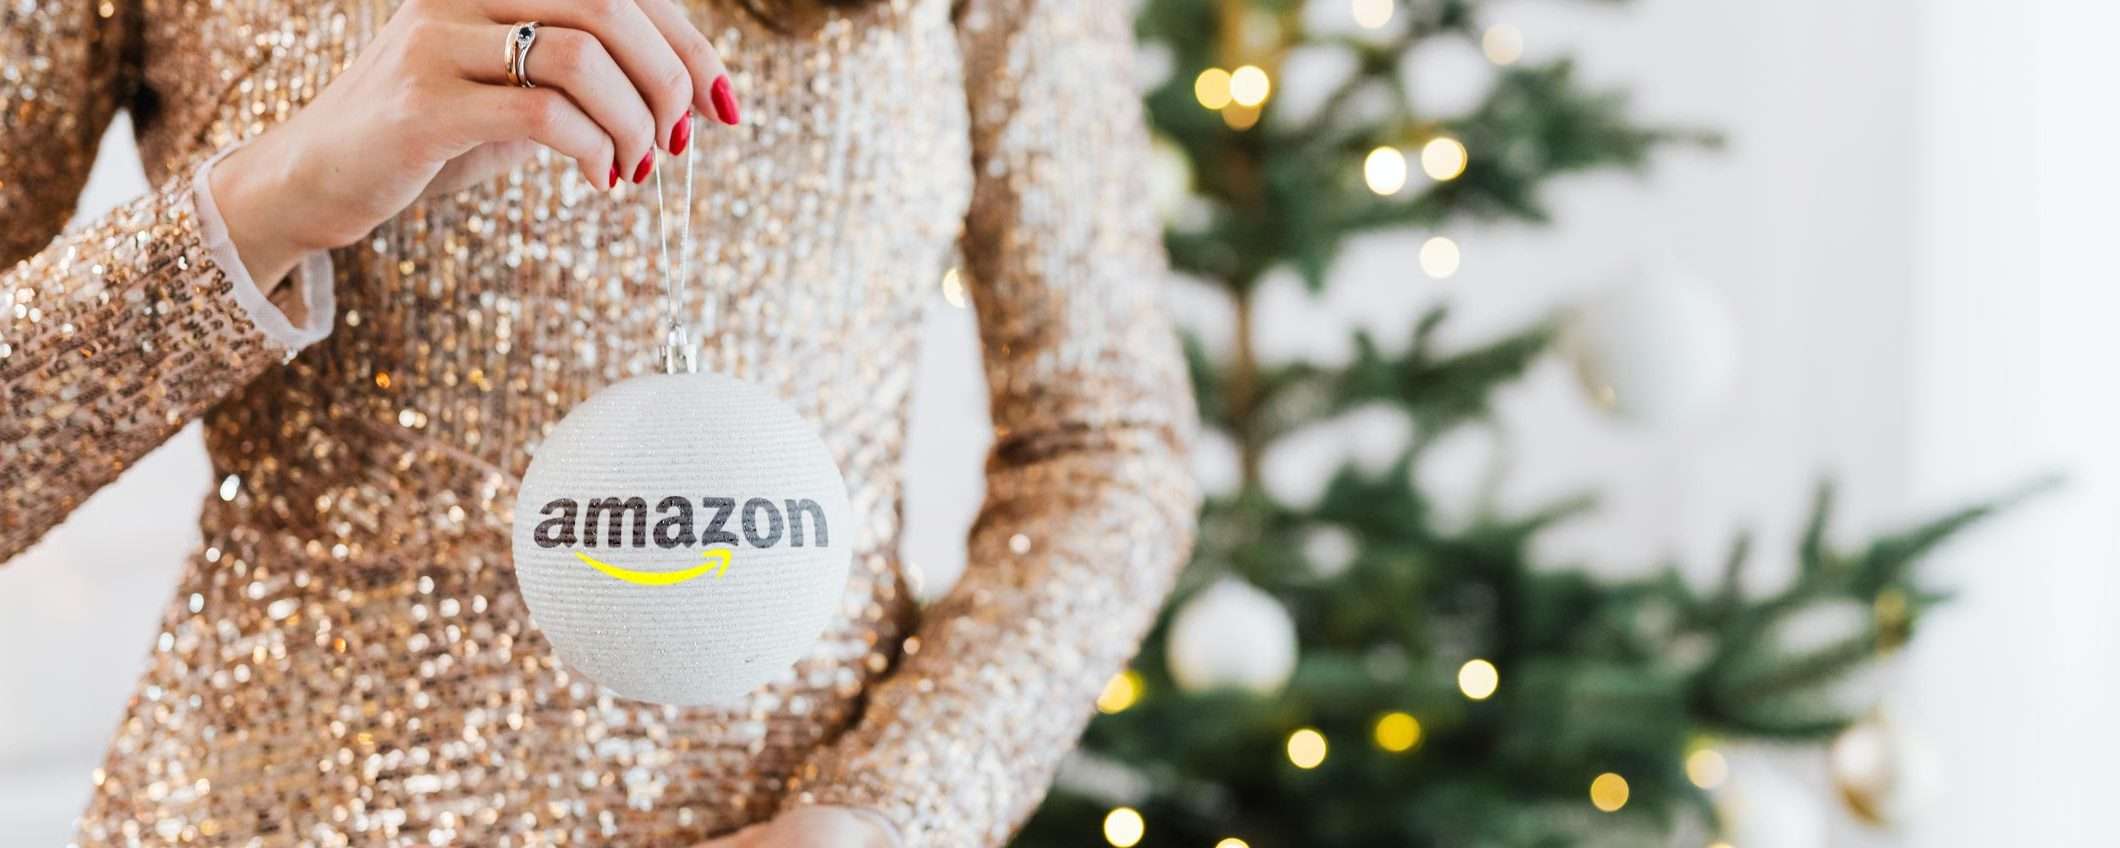 Amazon, al via oggi le Offerte di Natale